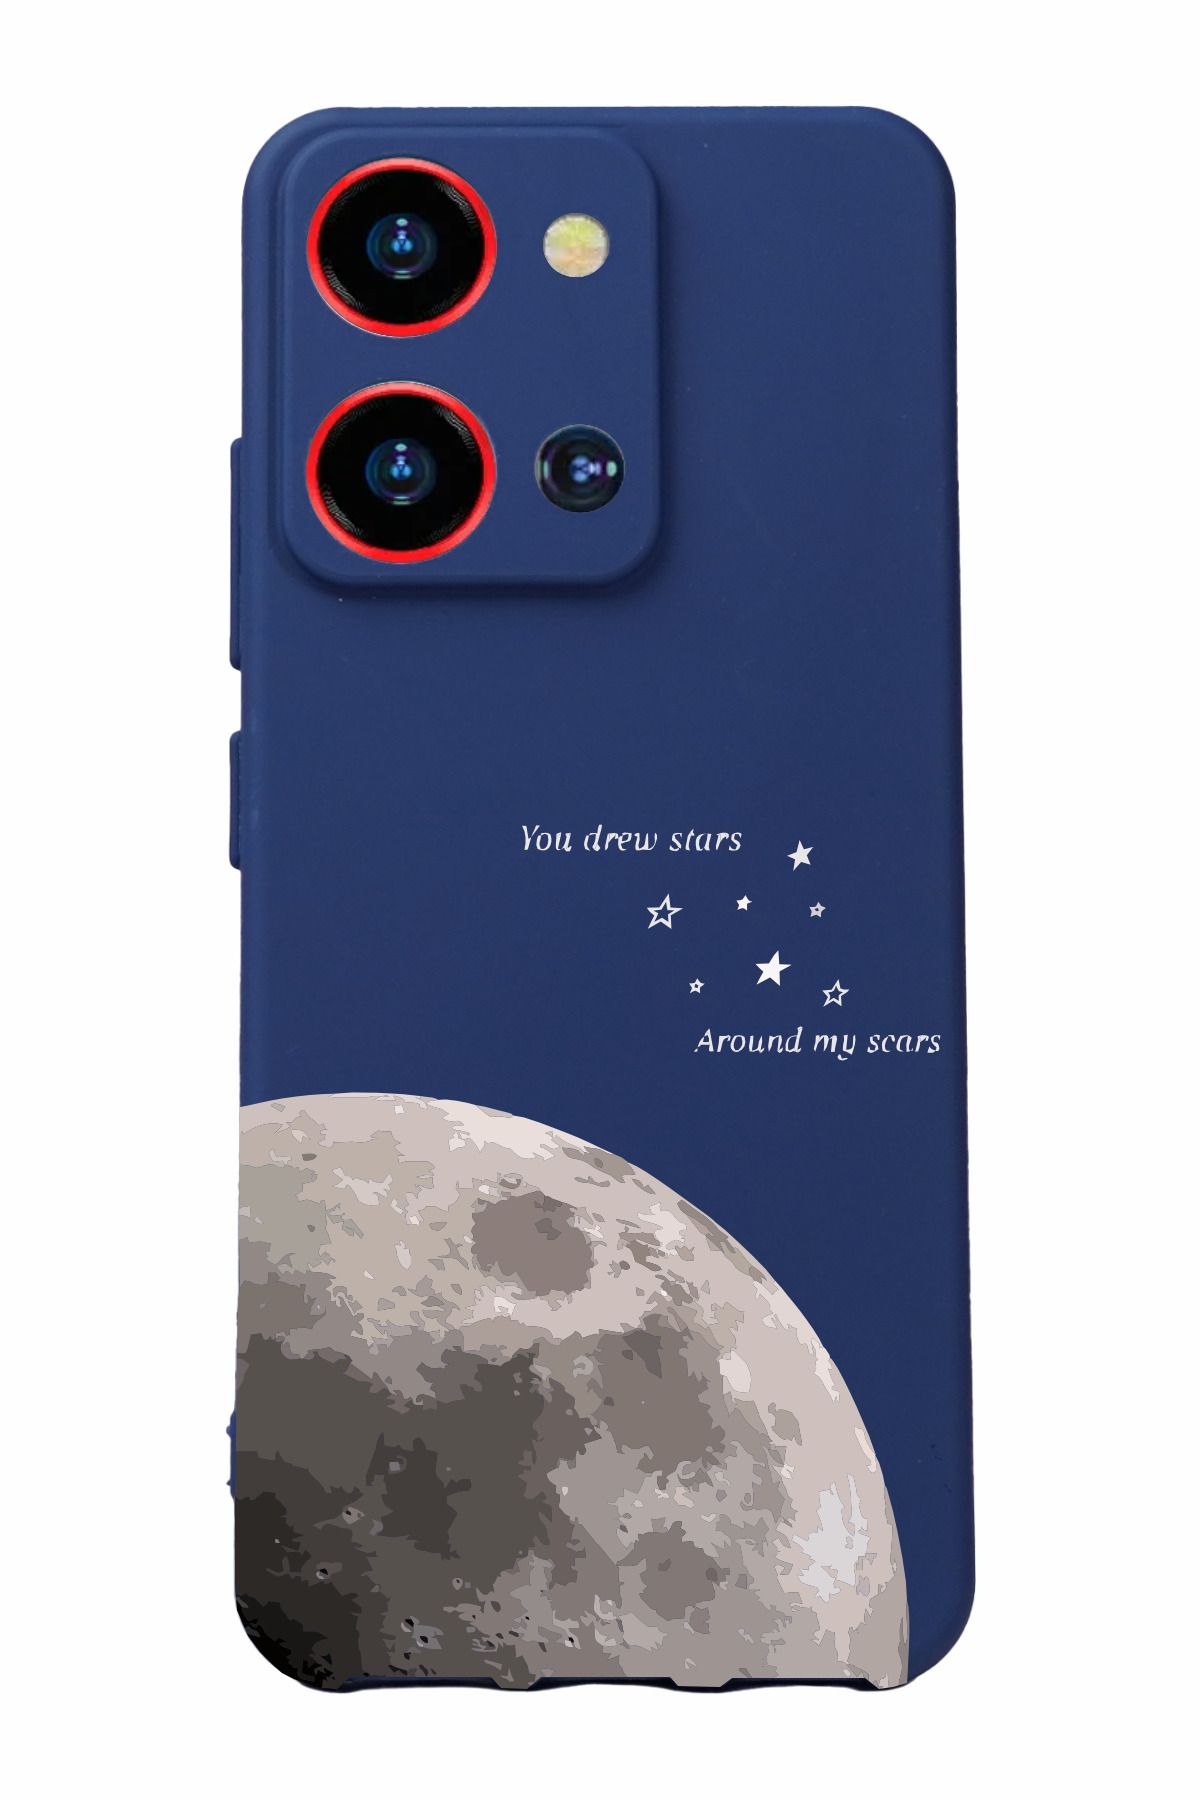 Reeder S19 Max Pro S Zoom Uyumlu Kamera Korumalı ve Tasarımlı Lacivert Renk Silikon Kılıf